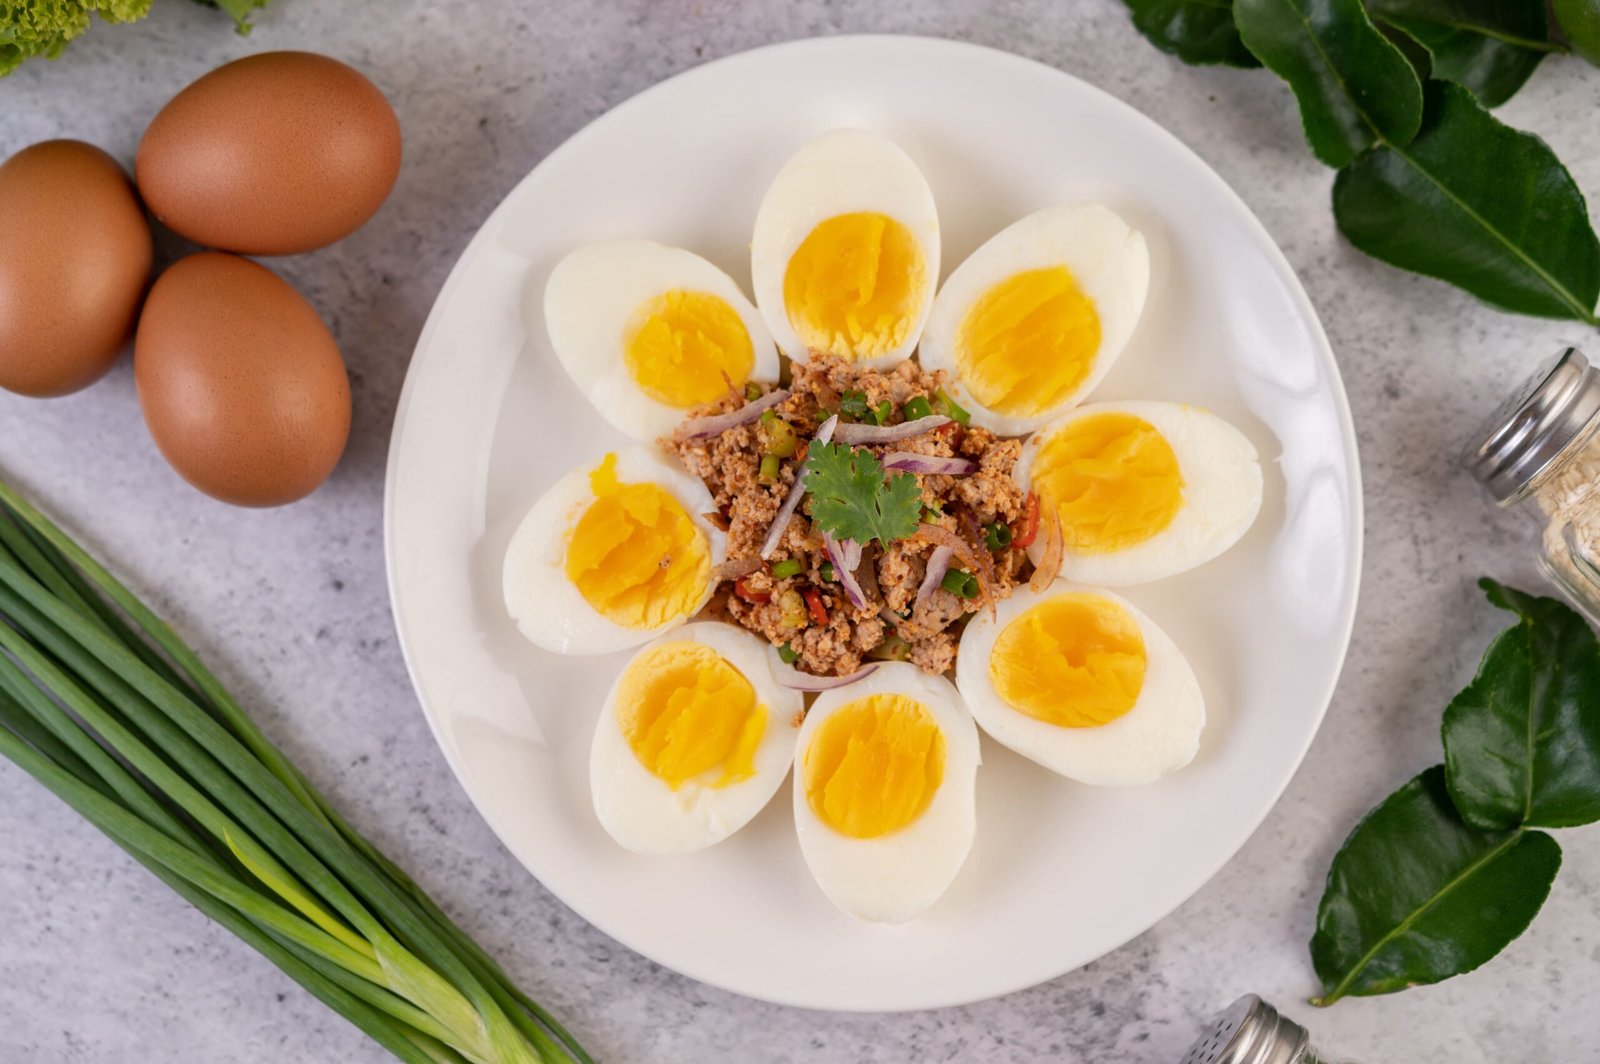 كيفية تحضير البيض المسلوق: طرق سهلة وسريعة لتحضير بيض مسلوق مثالي